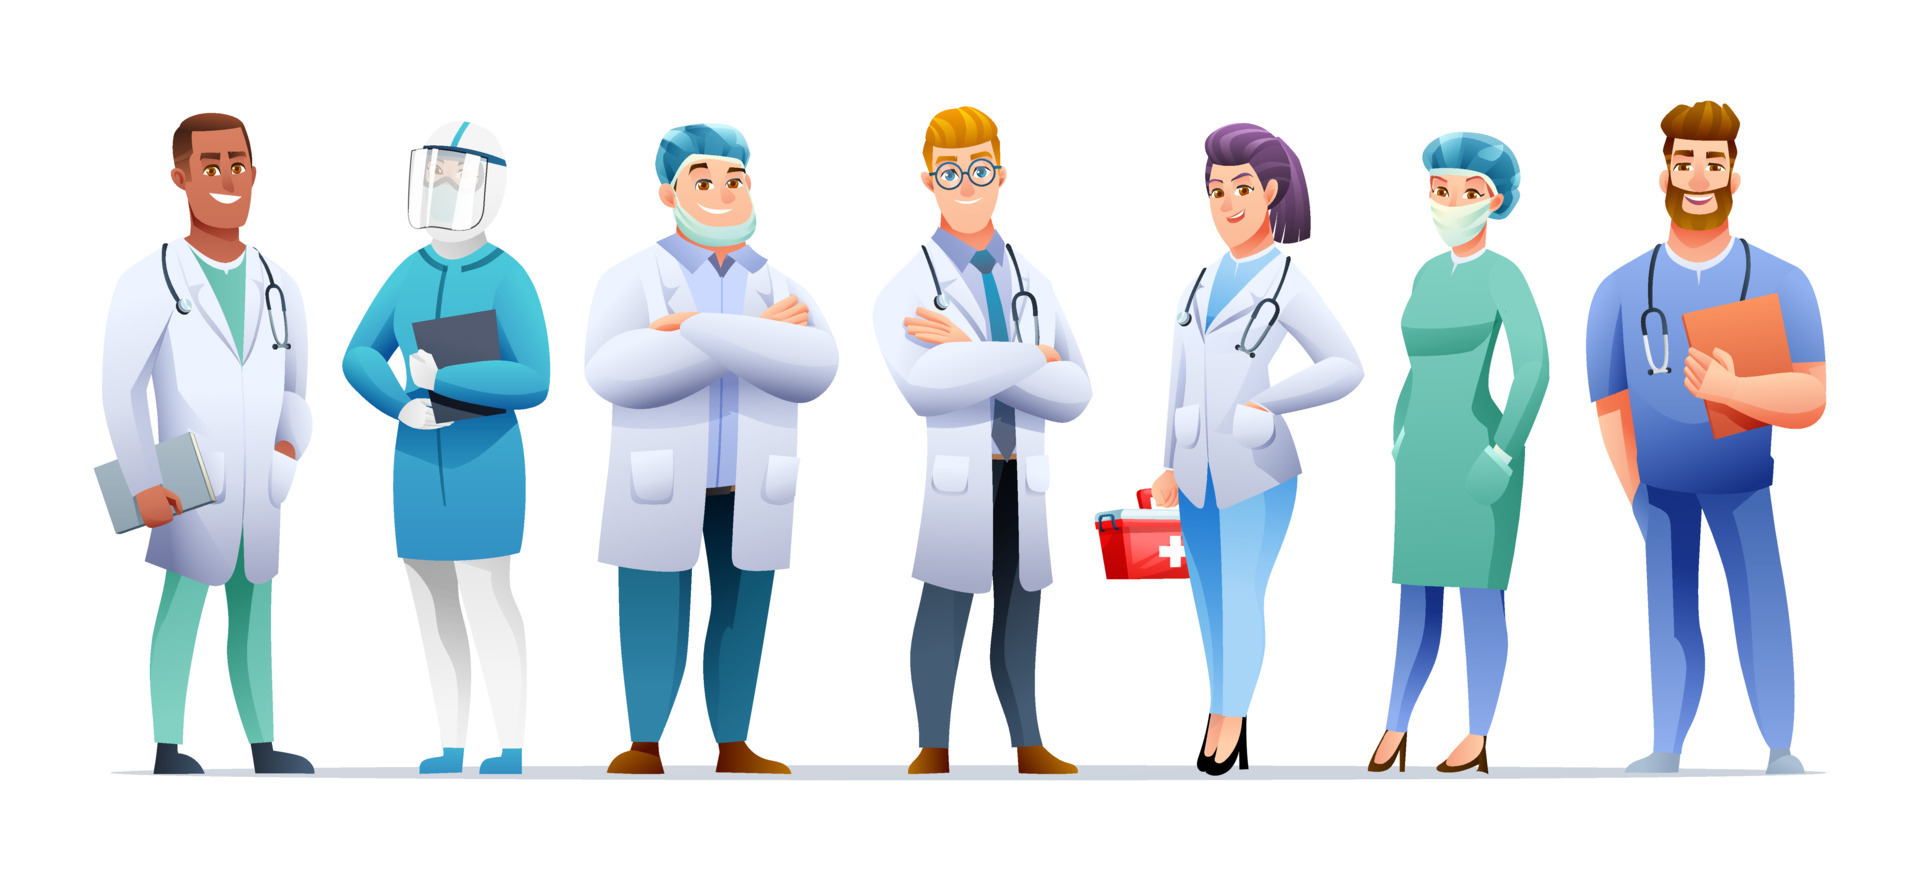 jovem médico masculino assistência equipe médica profissional praticante  personagem de desenho animado 2658928 Vetor no Vecteezy